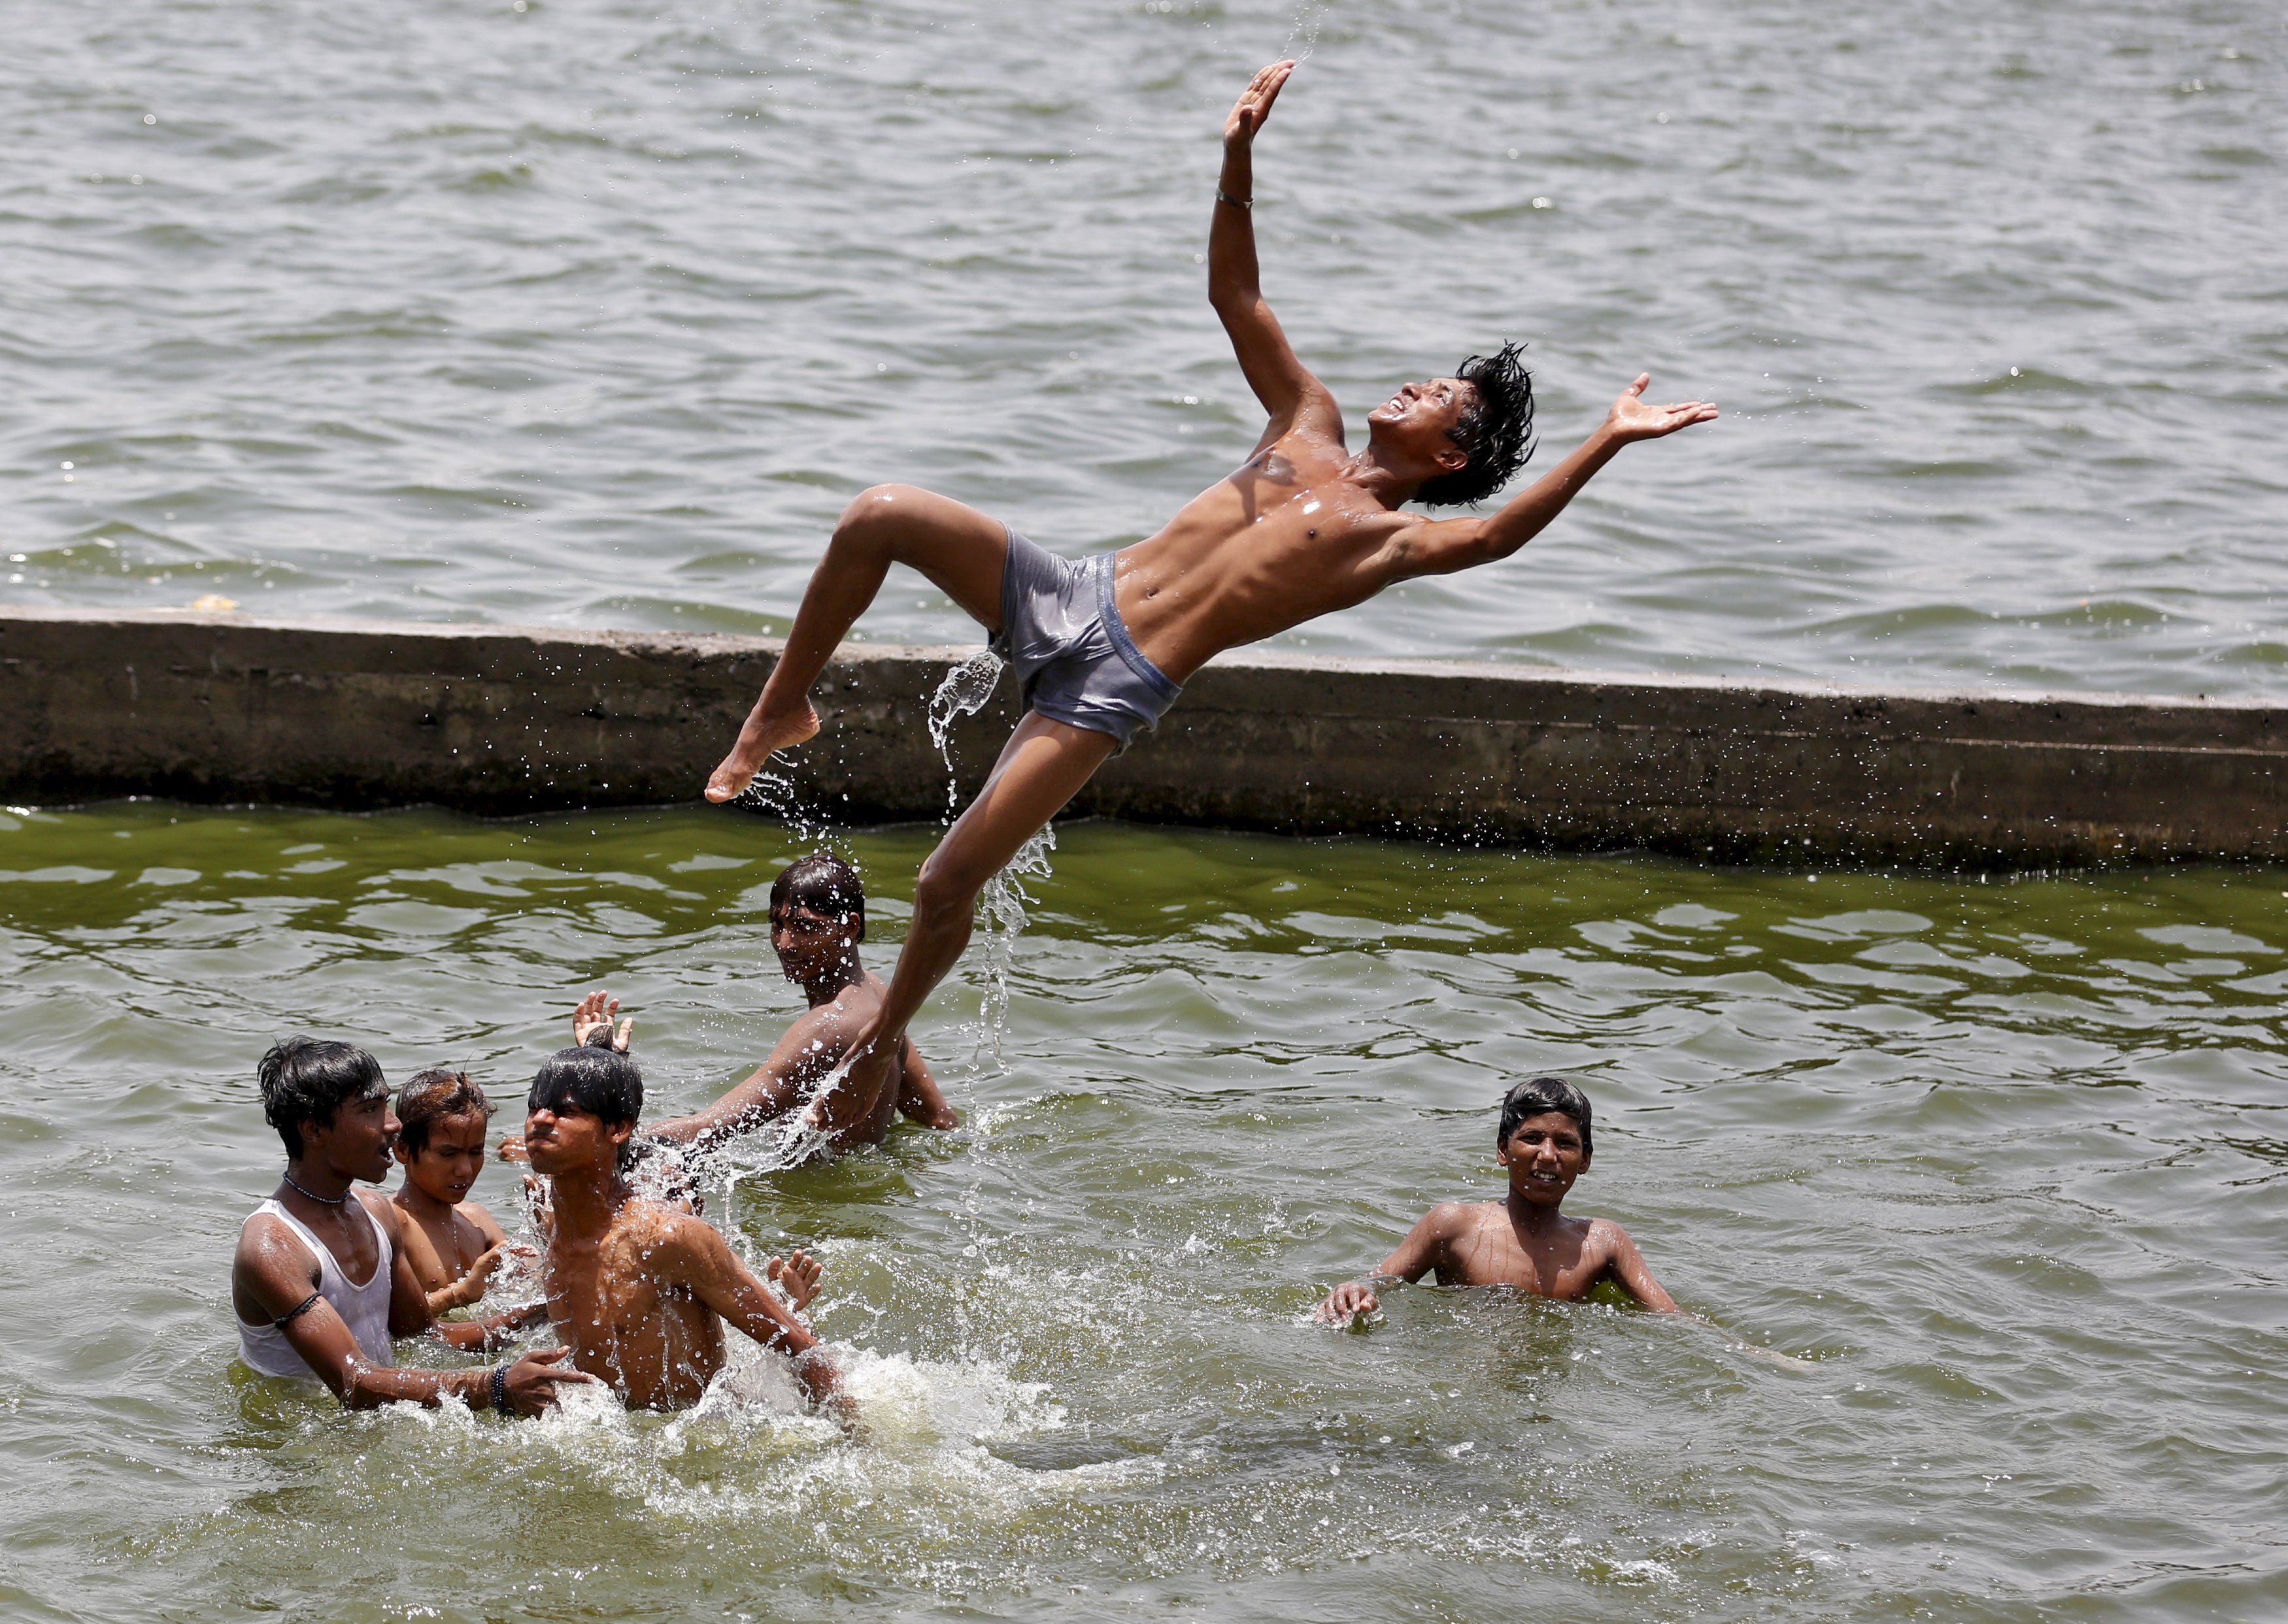 Нравится купаться. Мальчики на речке. Мальчики купаются в реке. Индия мальчики купаются.